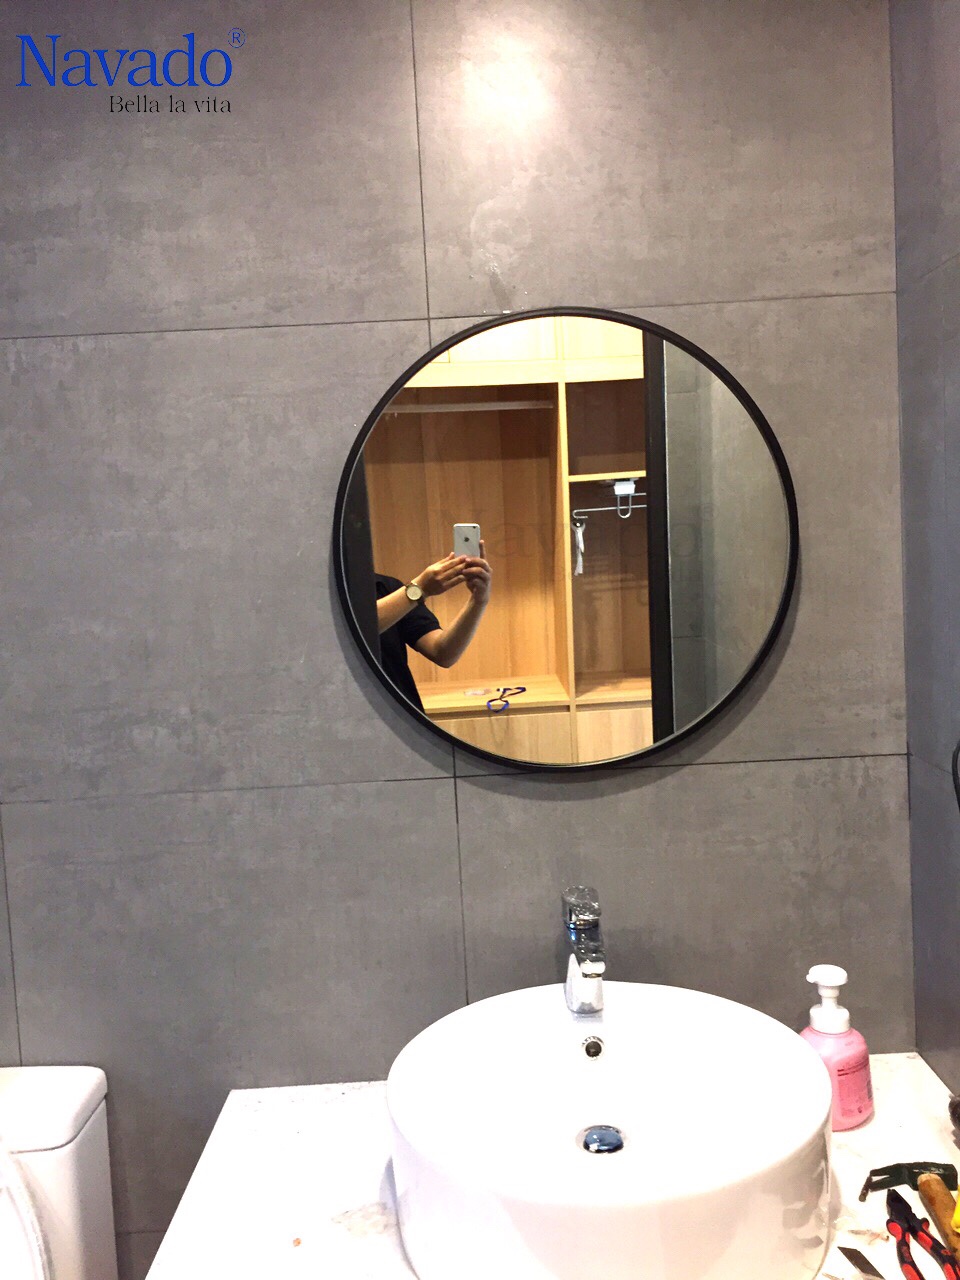 Gương treo nhà tắm tròn vành đen: Sản phẩm Gương treo nhà tắm tròn vành đen sẽ làm cho phòng tắm của bạn trở nên đẹp hơn rất nhiều. Không chỉ là phụ kiện tạo điểm nhấn trong không gian phòng tắm, sản phẩm còn giúp bạn cảm nhận được vẻ đẹp tinh tế và sang trọng. Hãy đến với chúng tôi để được tư vấn và sở hữu sản phẩm này ngay hôm nay.